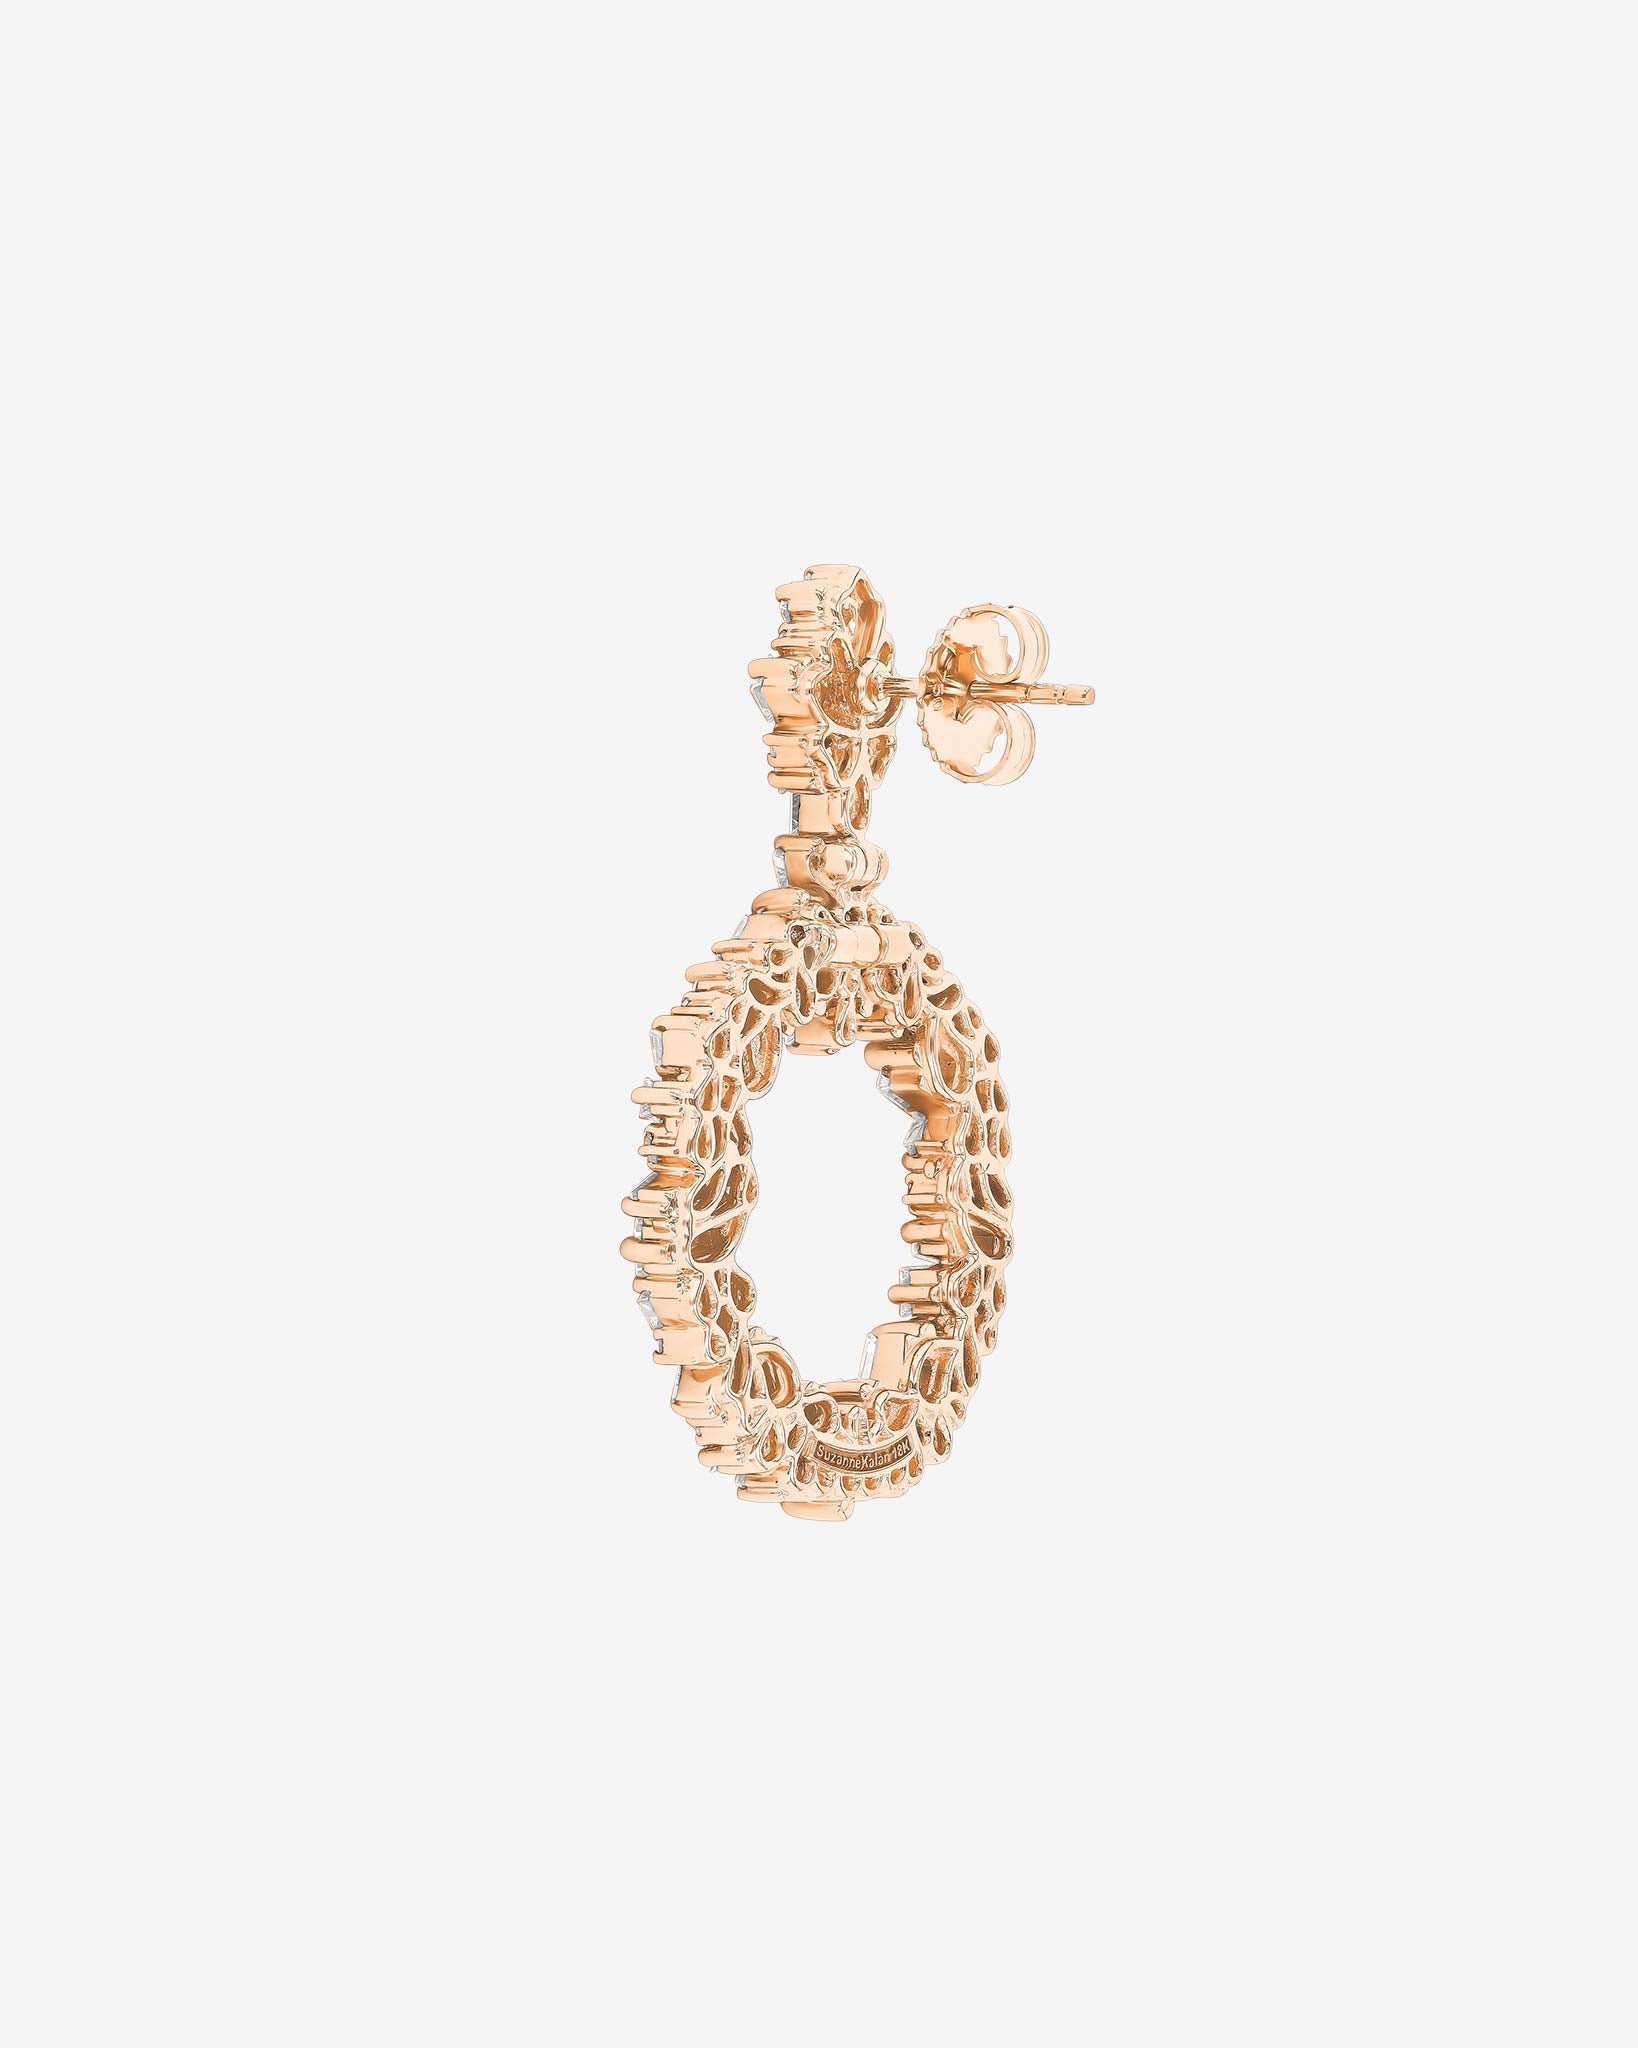 Suzanne Kalan La Fantaisie Eclipse Diamond Drop Earrings in 18k rose gold